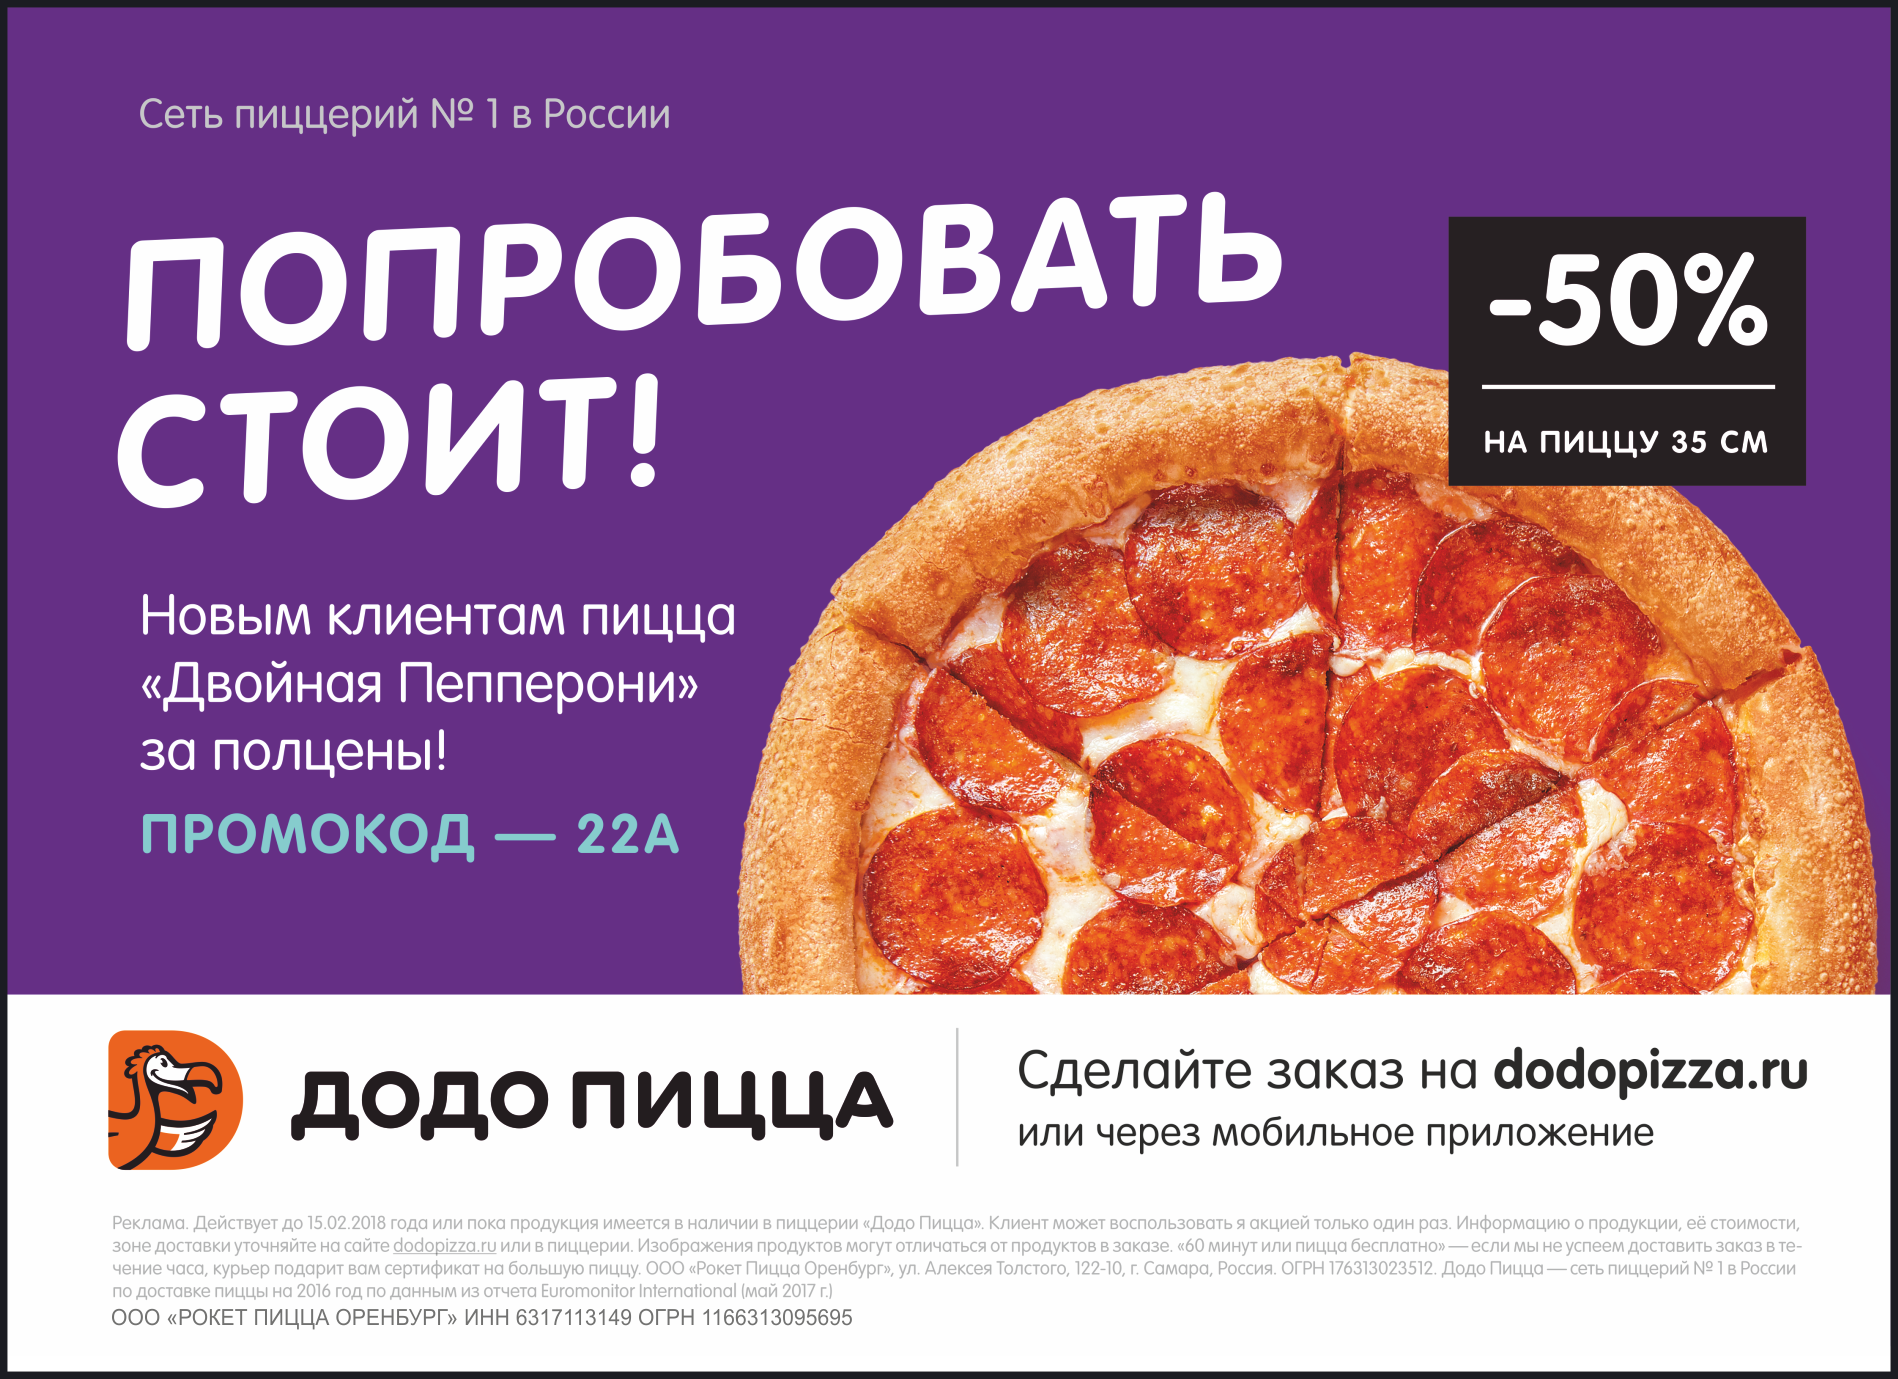 Додо пицца доставка час. Додо пицца реклама. Рекламный плакат Додо пицца. Баннер Додо пицца рекламный. Реклама пиццерии Додо.